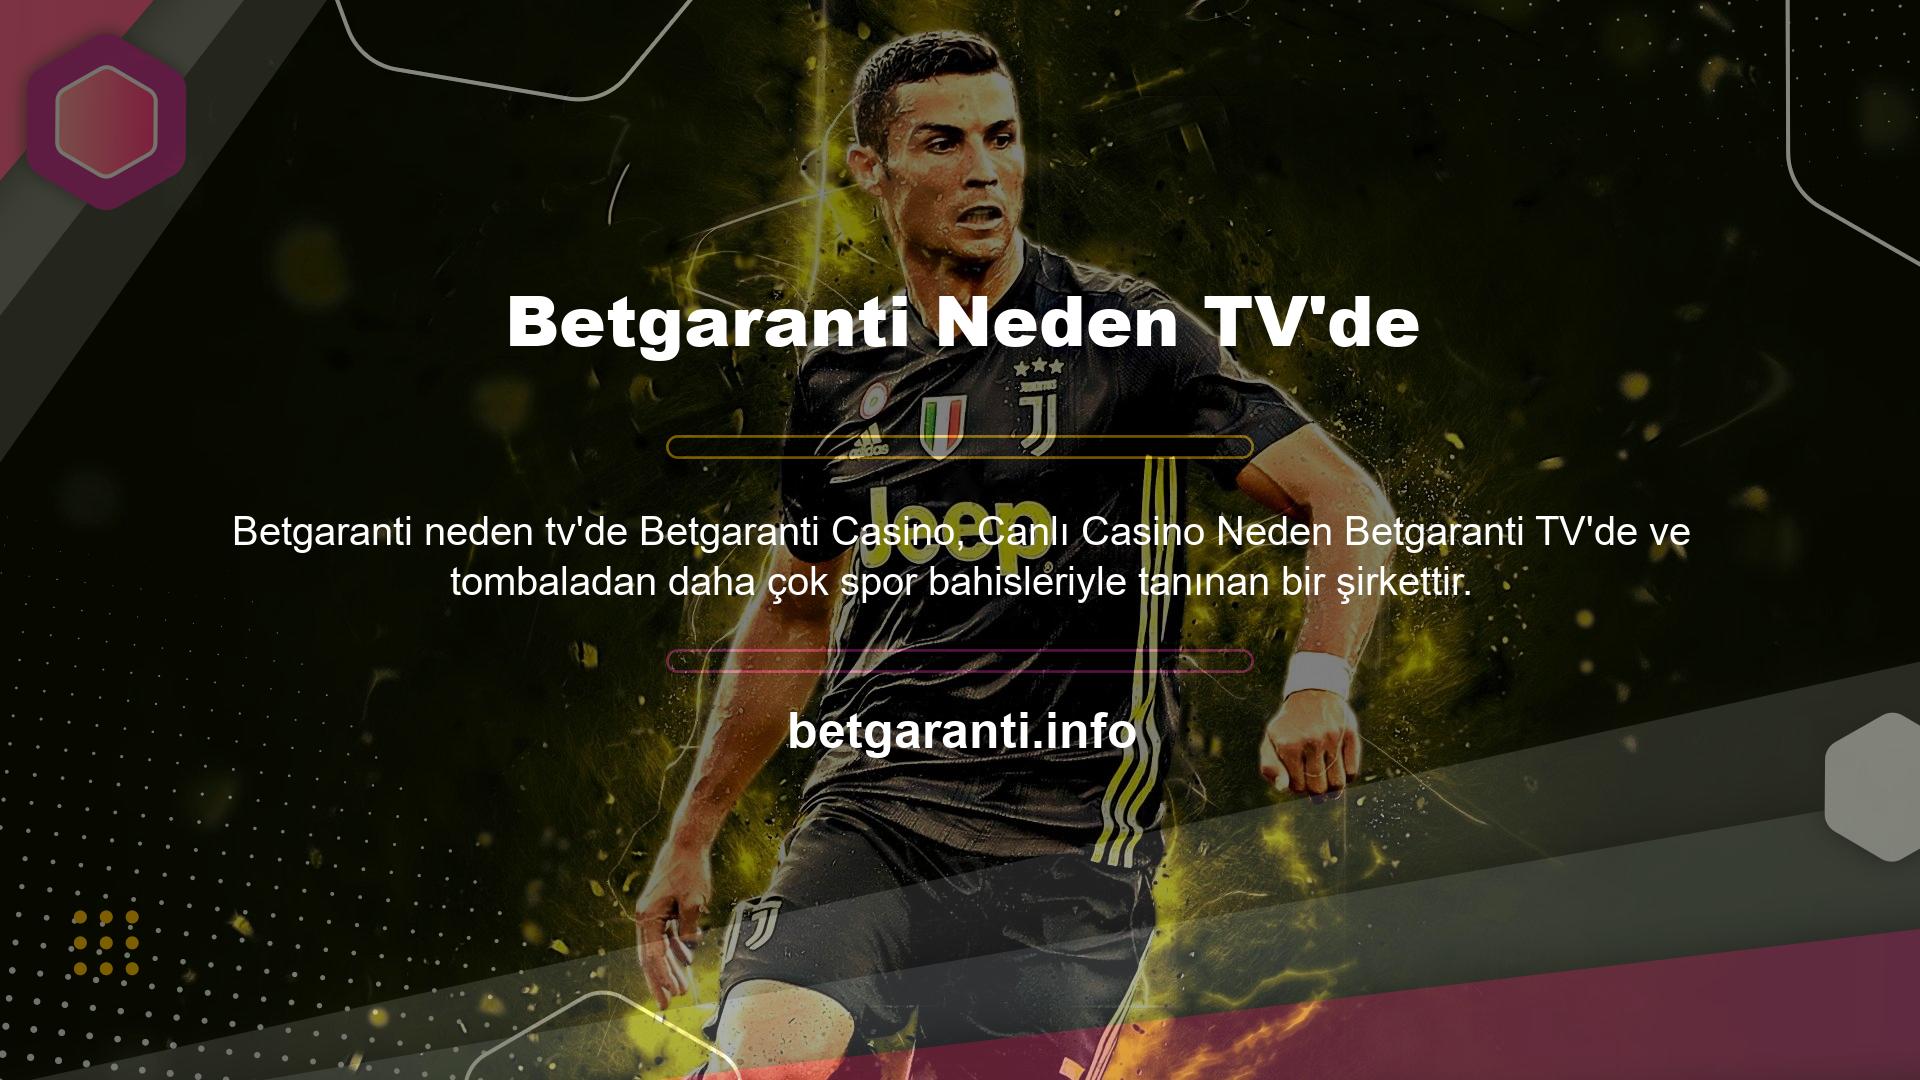 Spor bahislerine çok sayıda oyuncunun katılması Betgaranti TV'nin açılmasının önemli sebeplerinden biridir